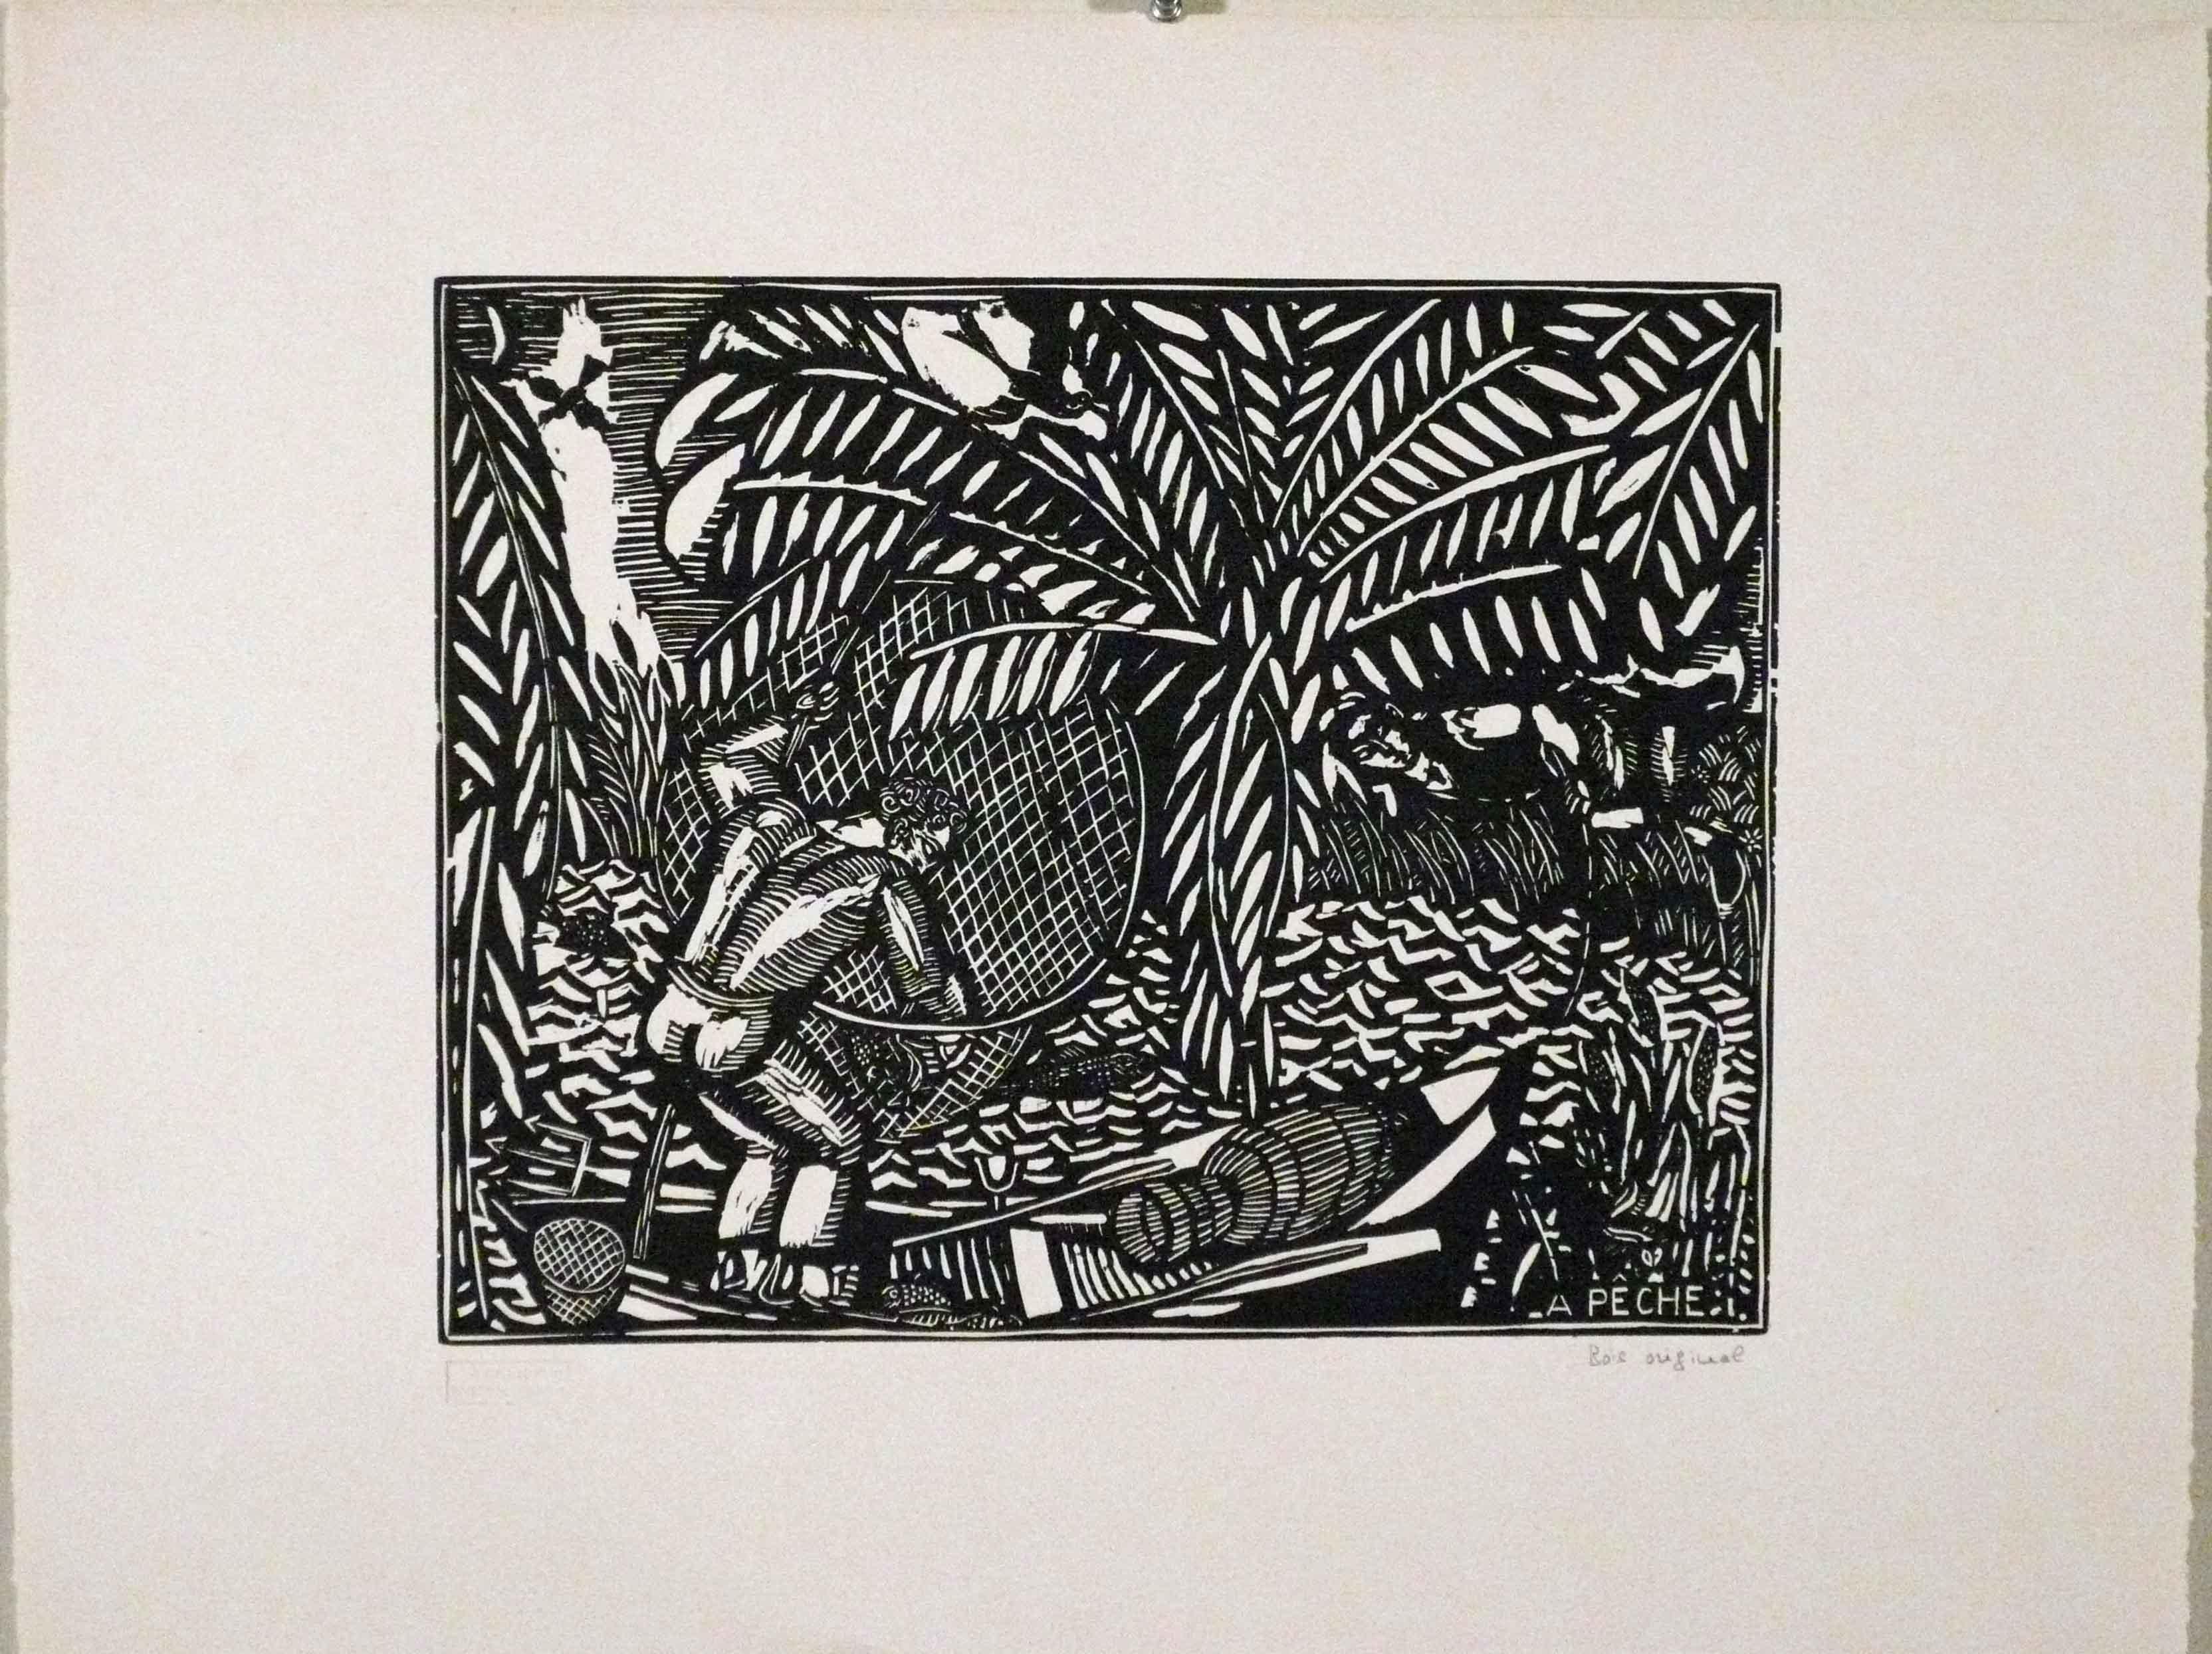 LA PECHE (MÖBEL) – Print von Raoul Dufy